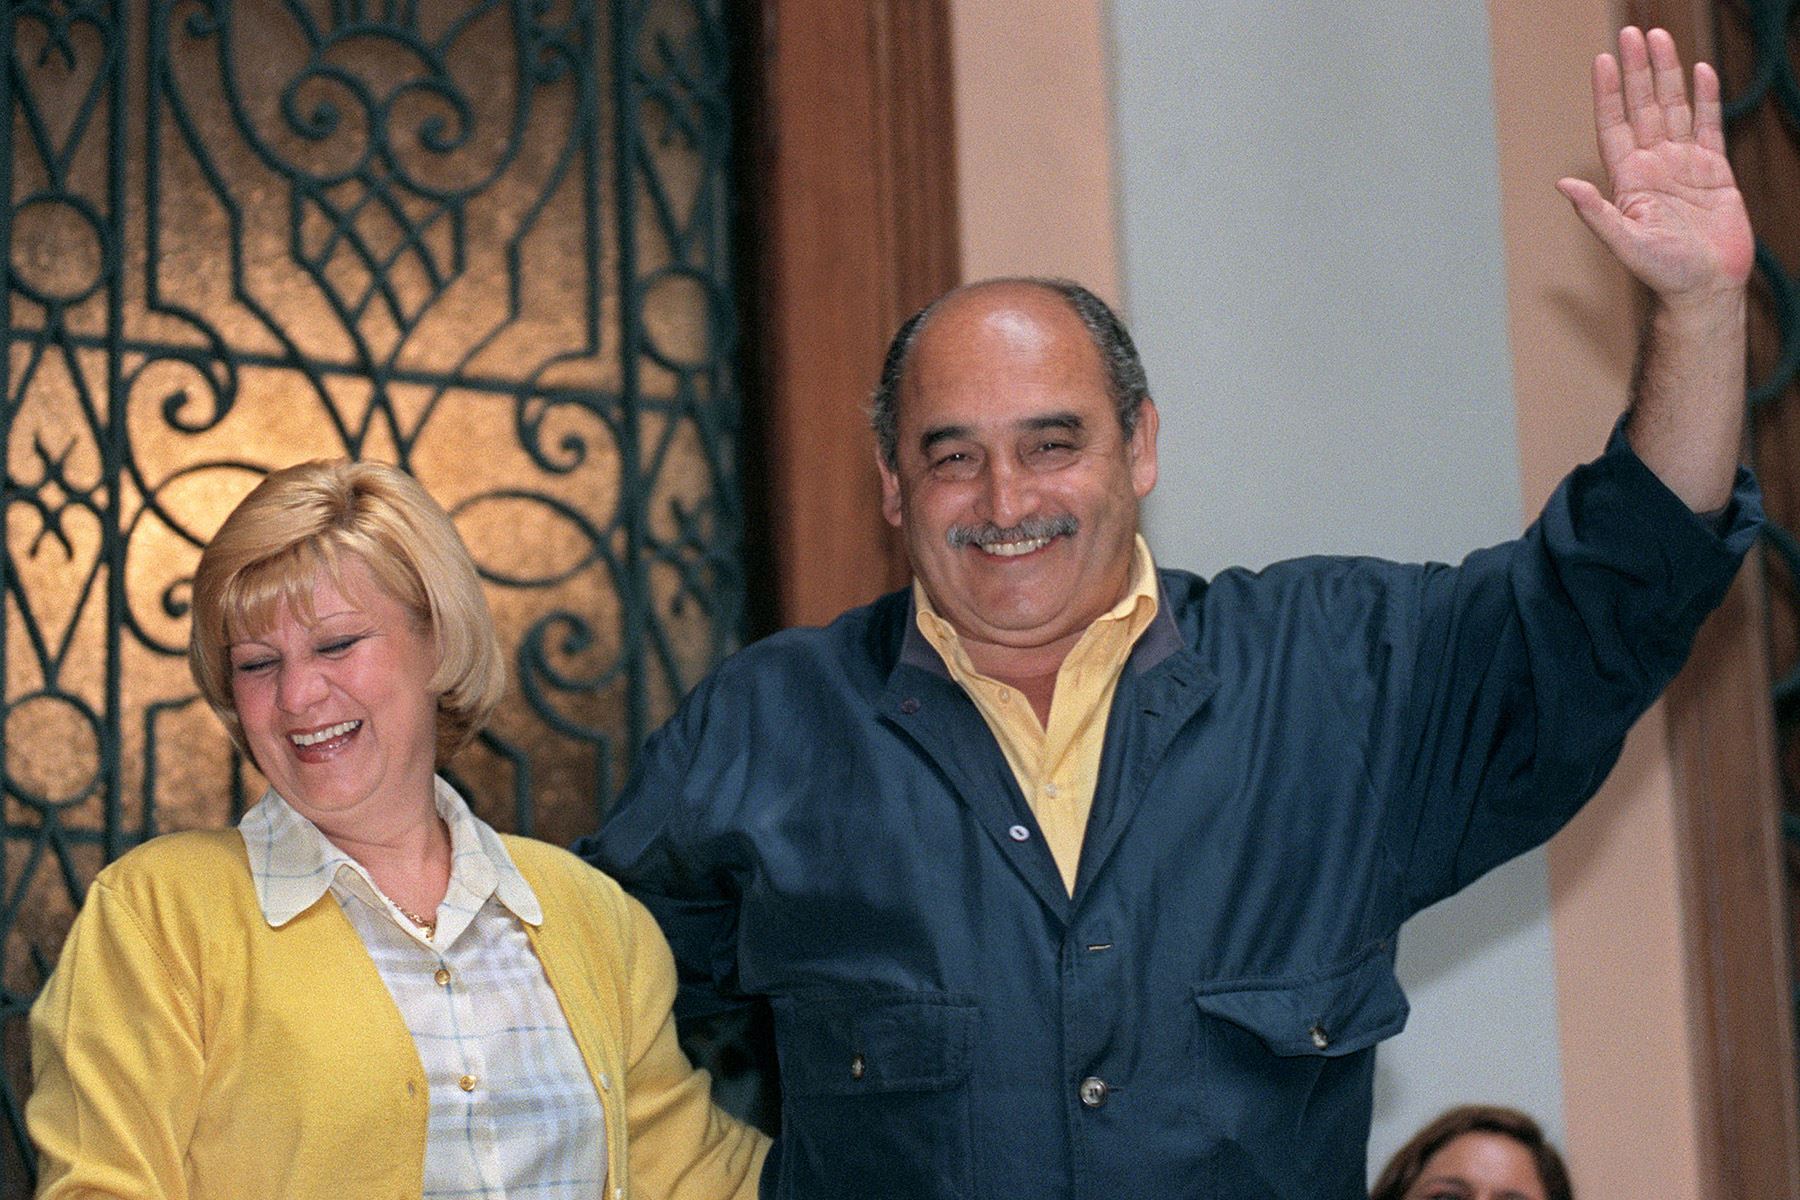 Lima - 11 octubre 1998 / El alcalde de Lima, Alberto Andrade, acompañado por su esposa Ana Botteri de Andrade, saluda a sus partidarios después de que las encuestas a boca de urna informaran de su reelección en las elecciones municipales con el 65 por ciento de los votos.  Foto: AFP